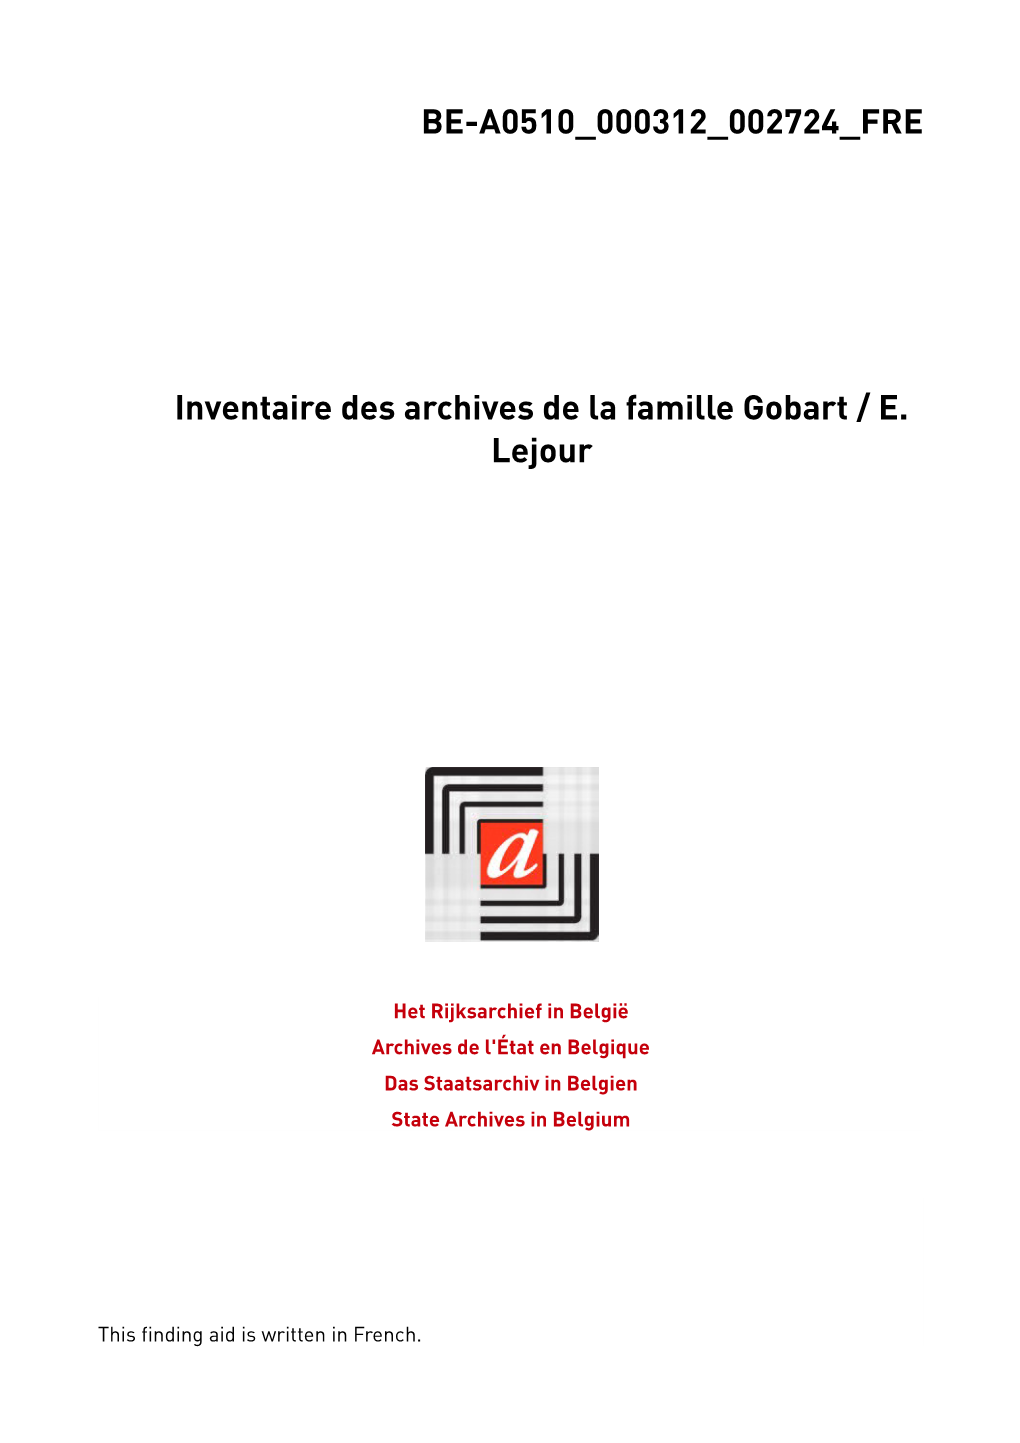 BE-A0510 000312 002724 FRE Inventaire Des Archives De La Famille Gobart / E. Lejour